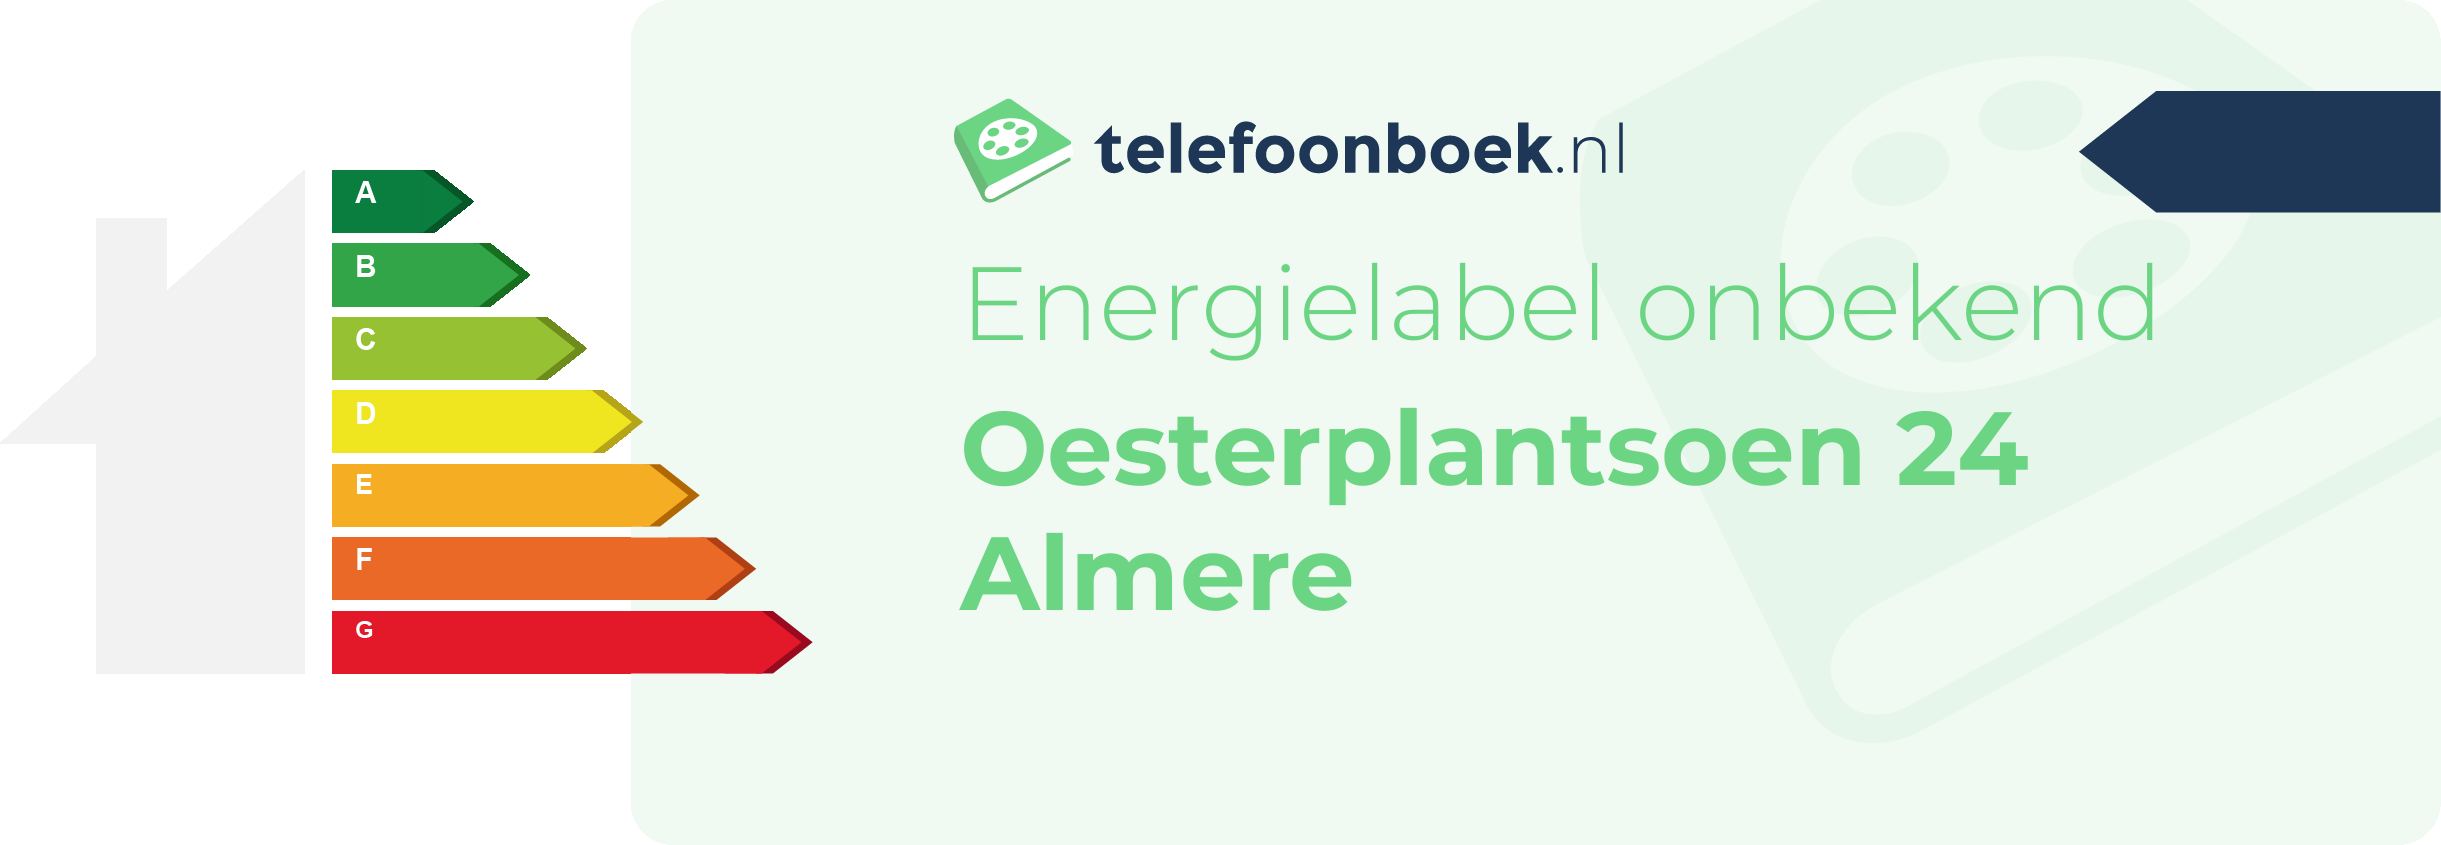 Energielabel Oesterplantsoen 24 Almere